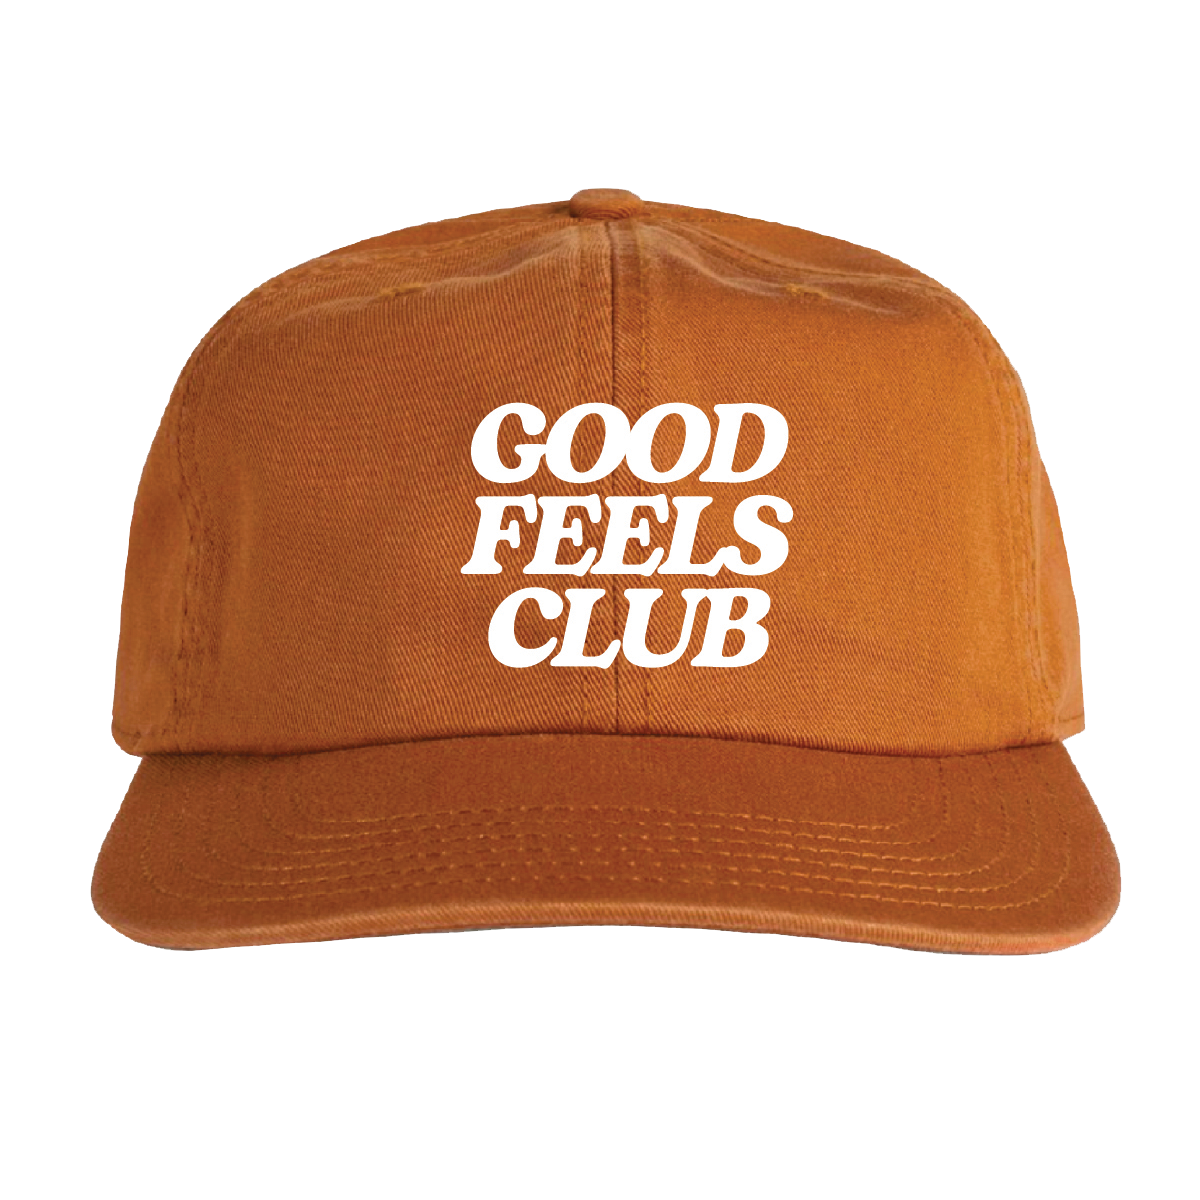 Good Feels Club Dad Cap